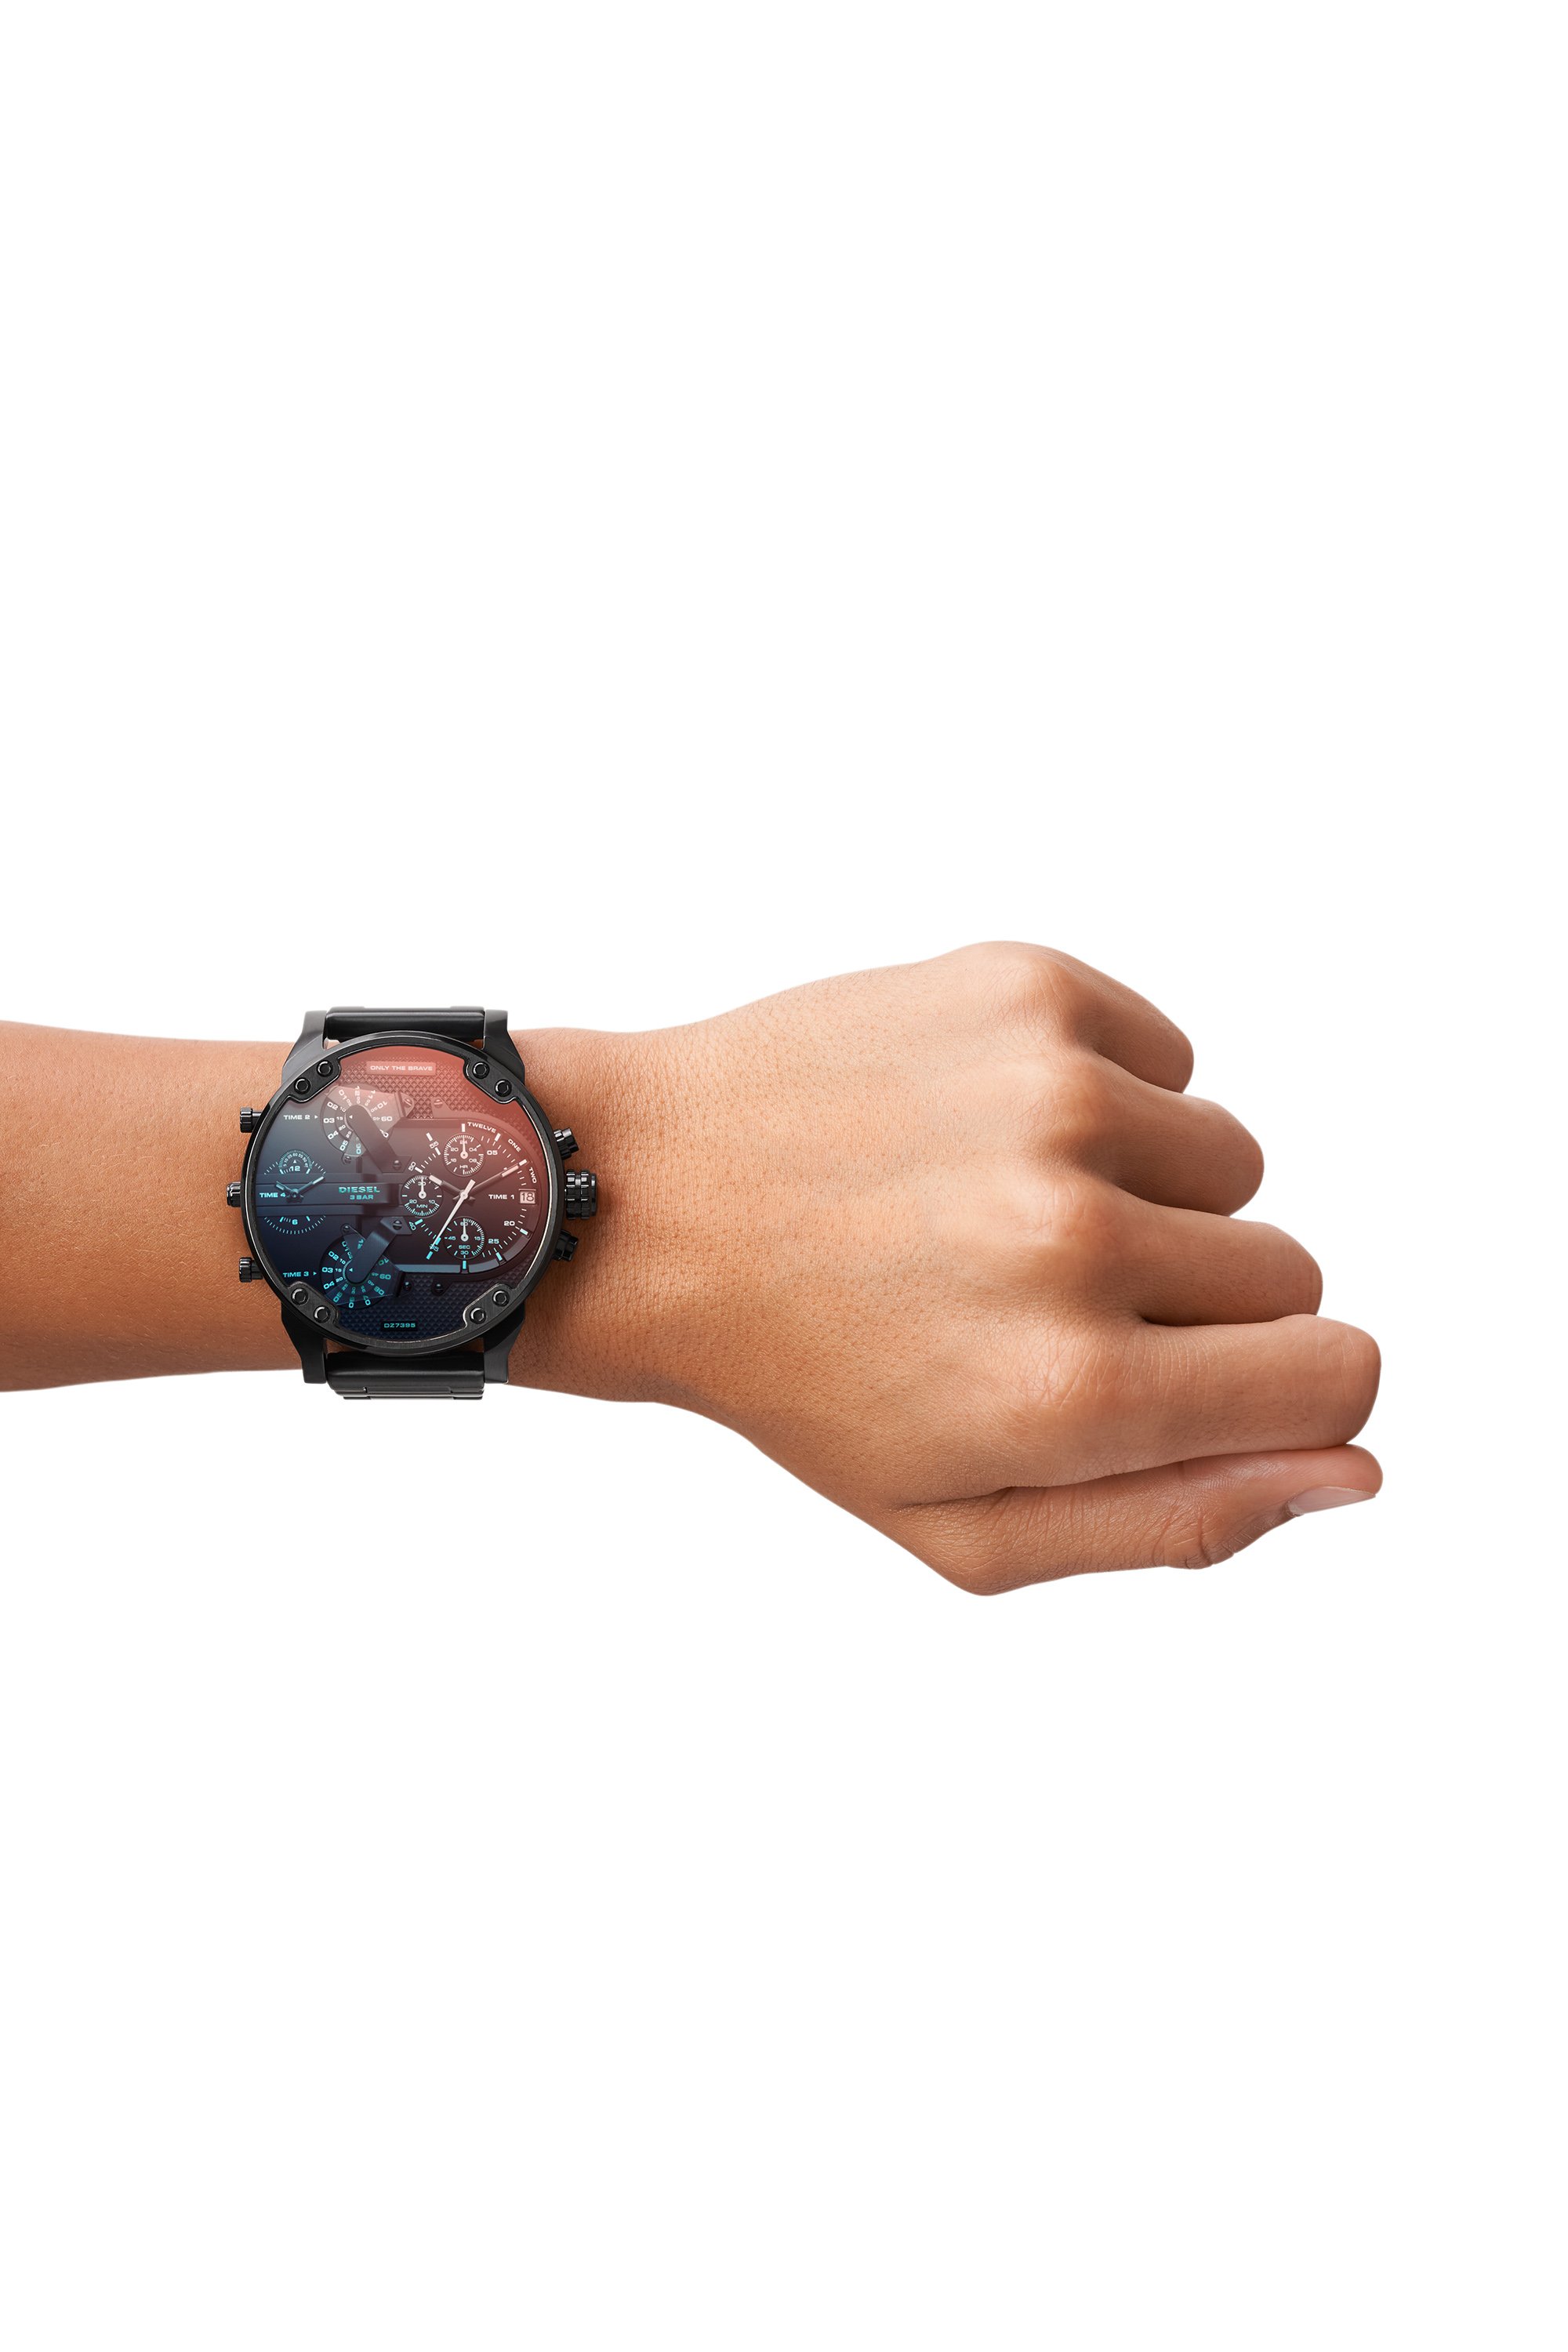 腕時計(アナログ)新品 ディーゼル DIESEL DZ7395 送料込み 腕時計